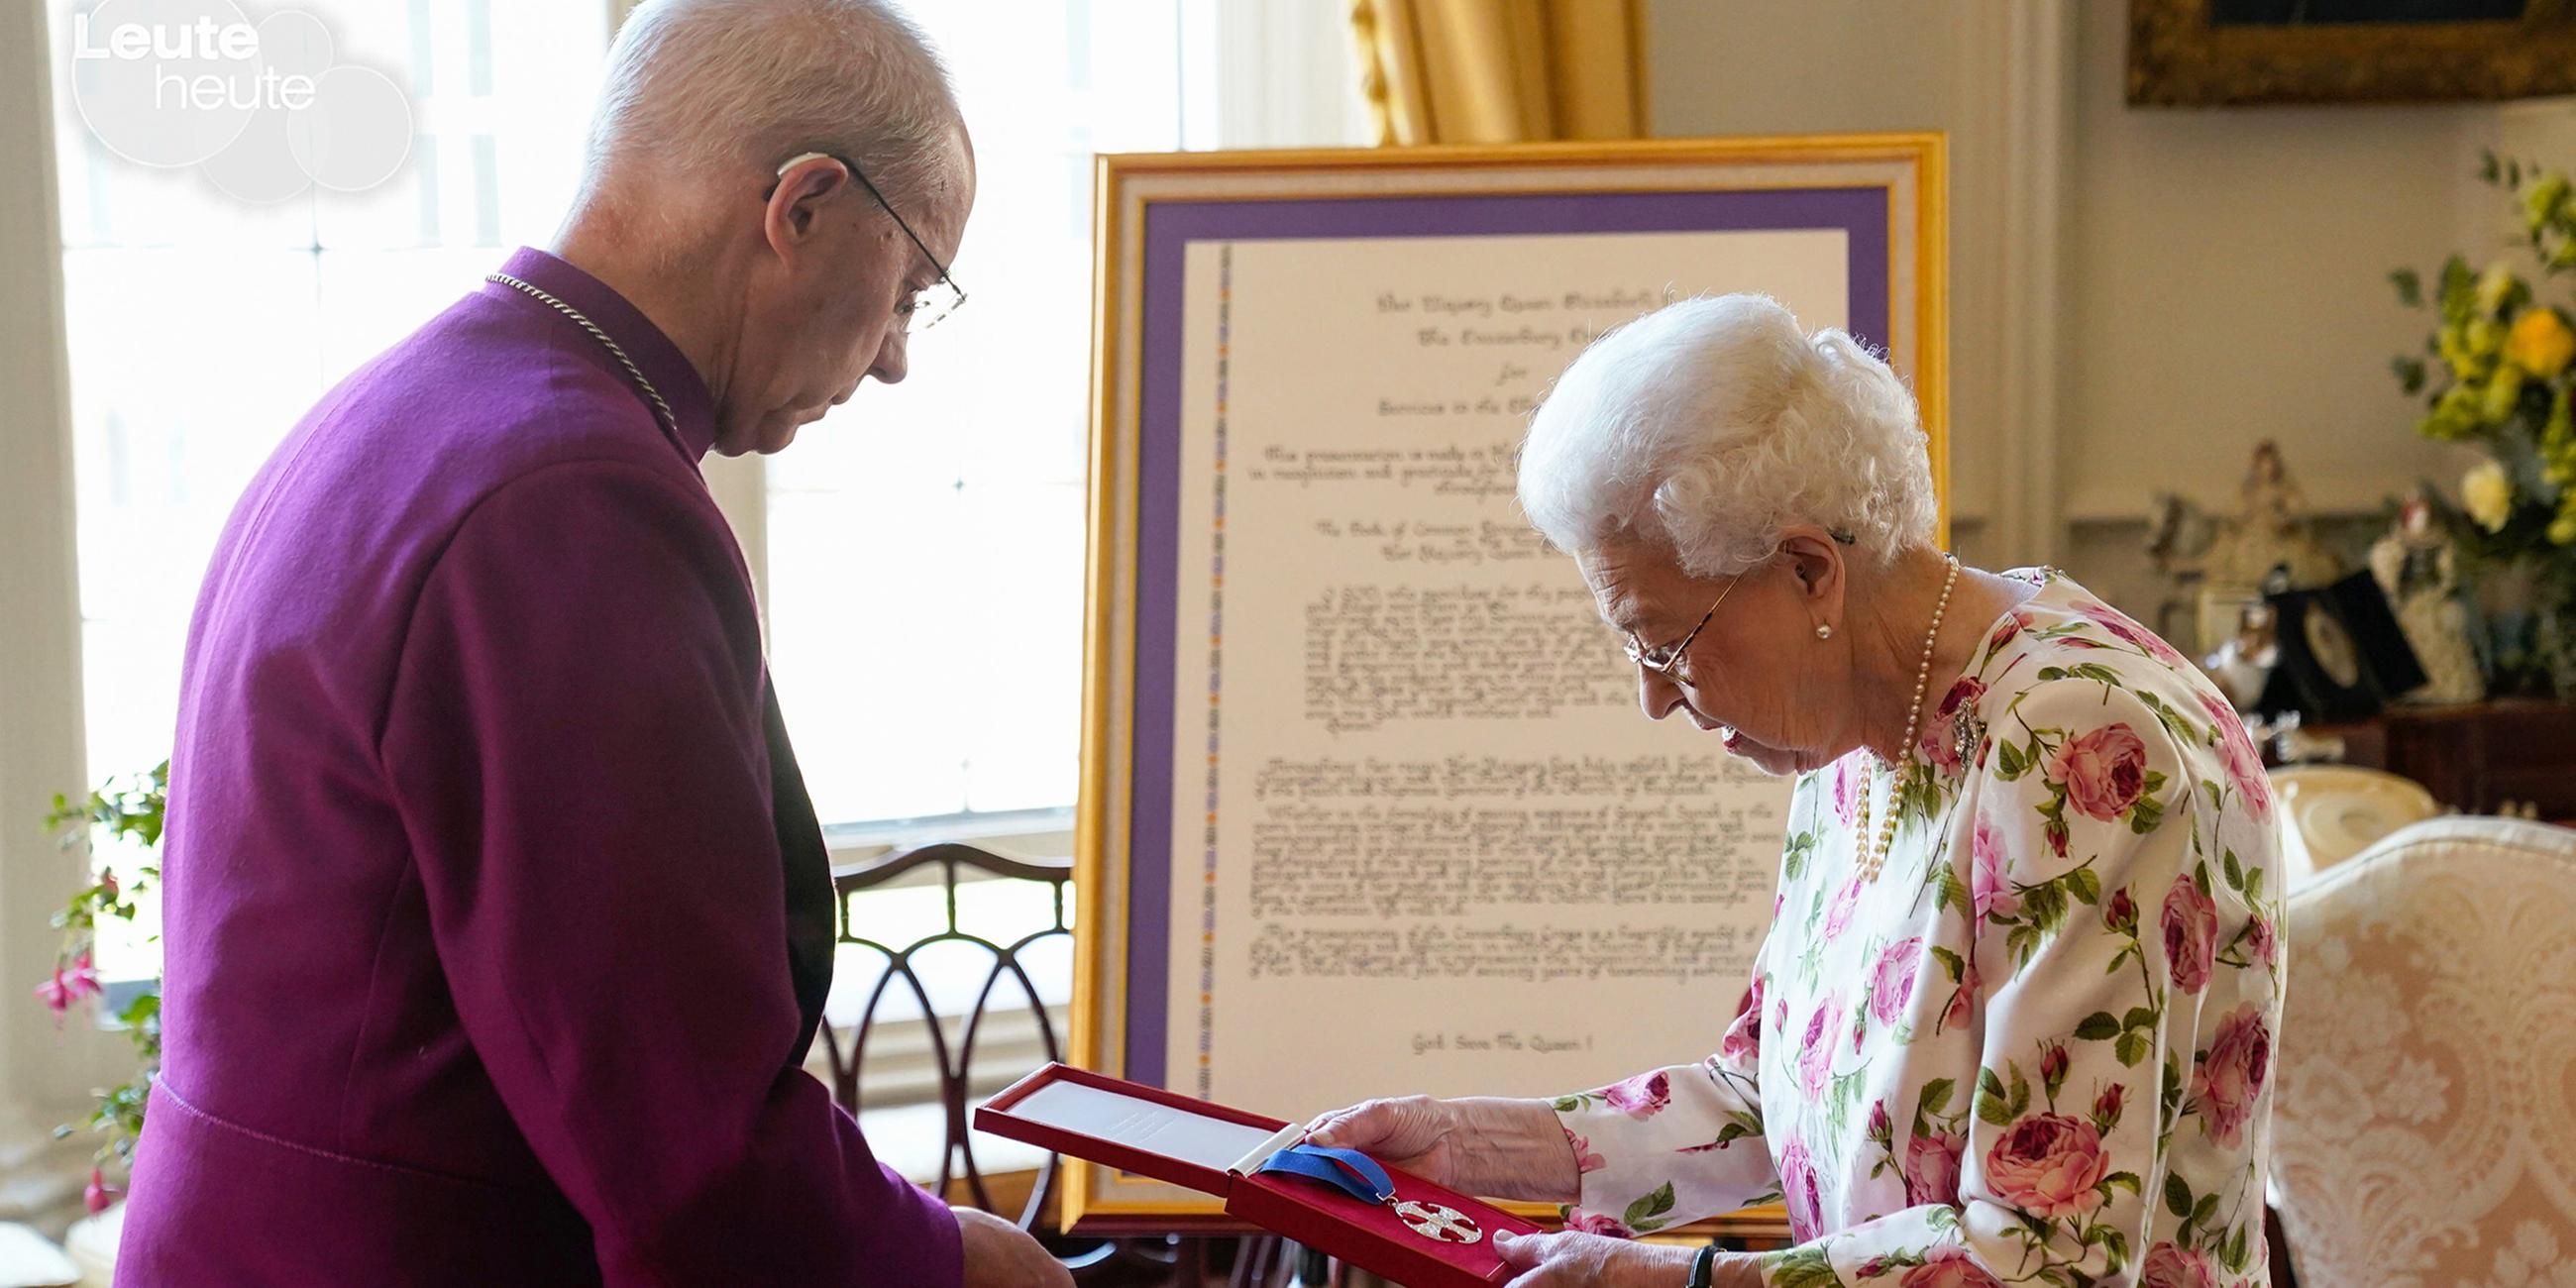 Der Bischof von Canterbury verlieh Queen Elizabeth II. eine Medaille in Form eines Kreuzes. Als Anerkennung für ihren 70-jährigen Dienst gegenüber der englischen Kirche